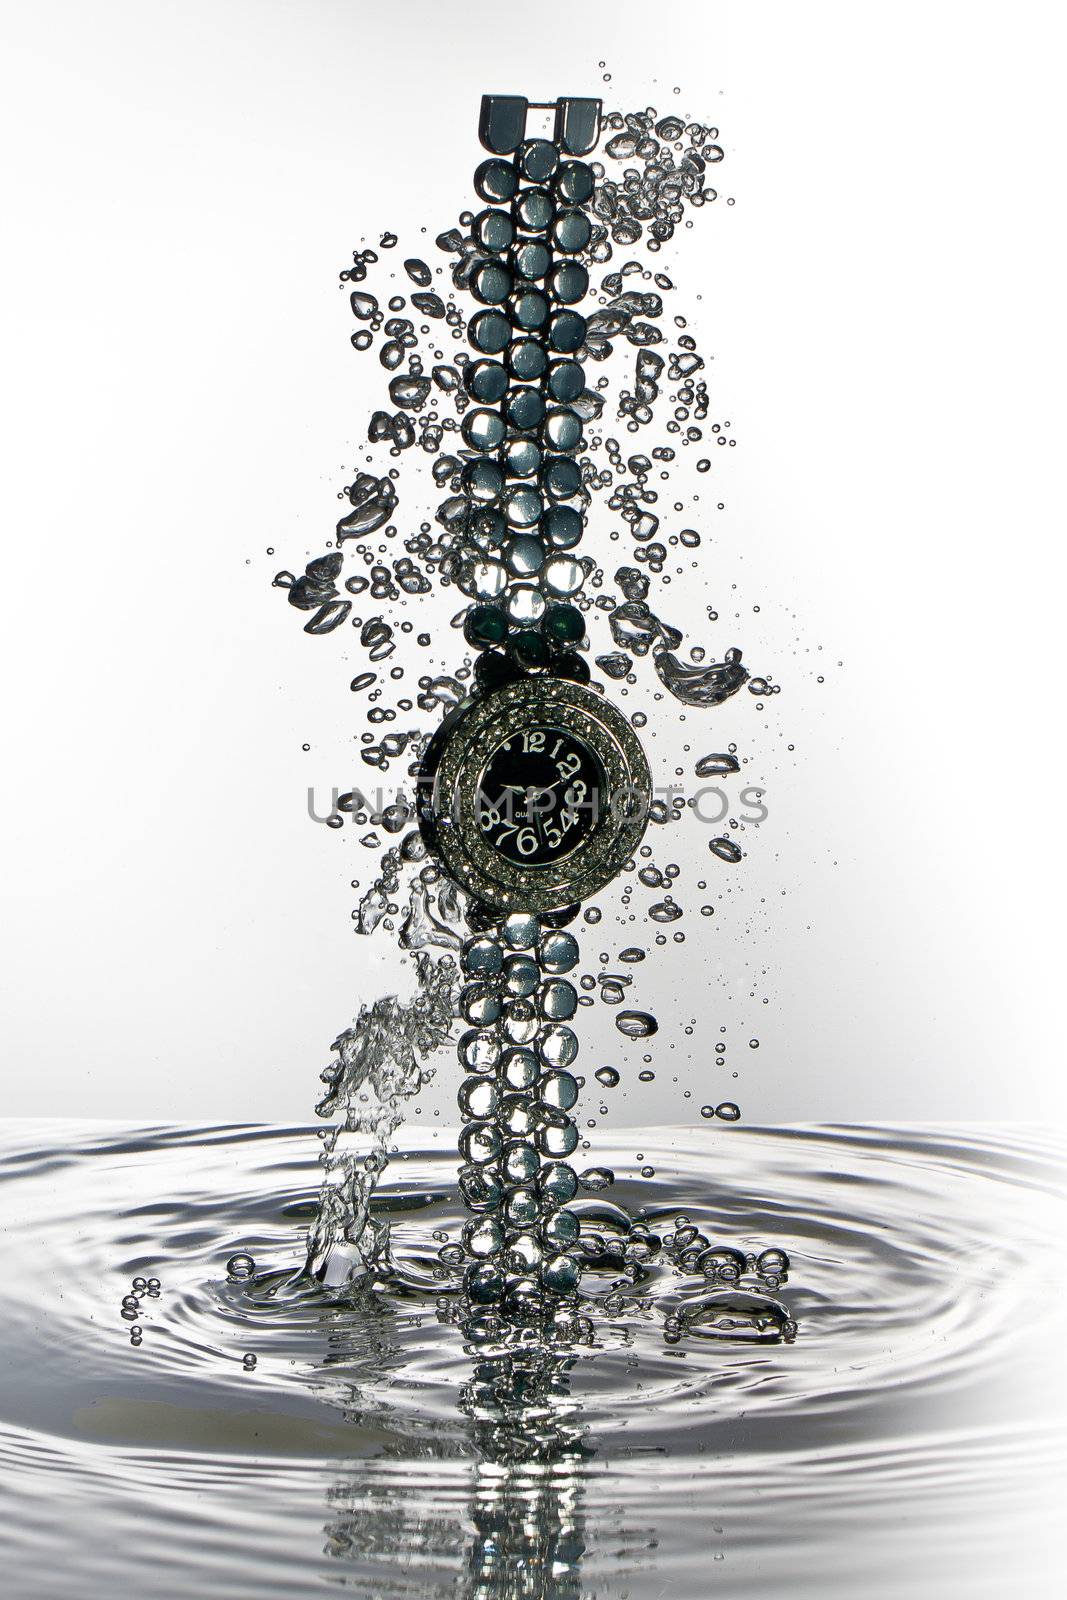 Wrist watch water splash necklace, high speed water splash